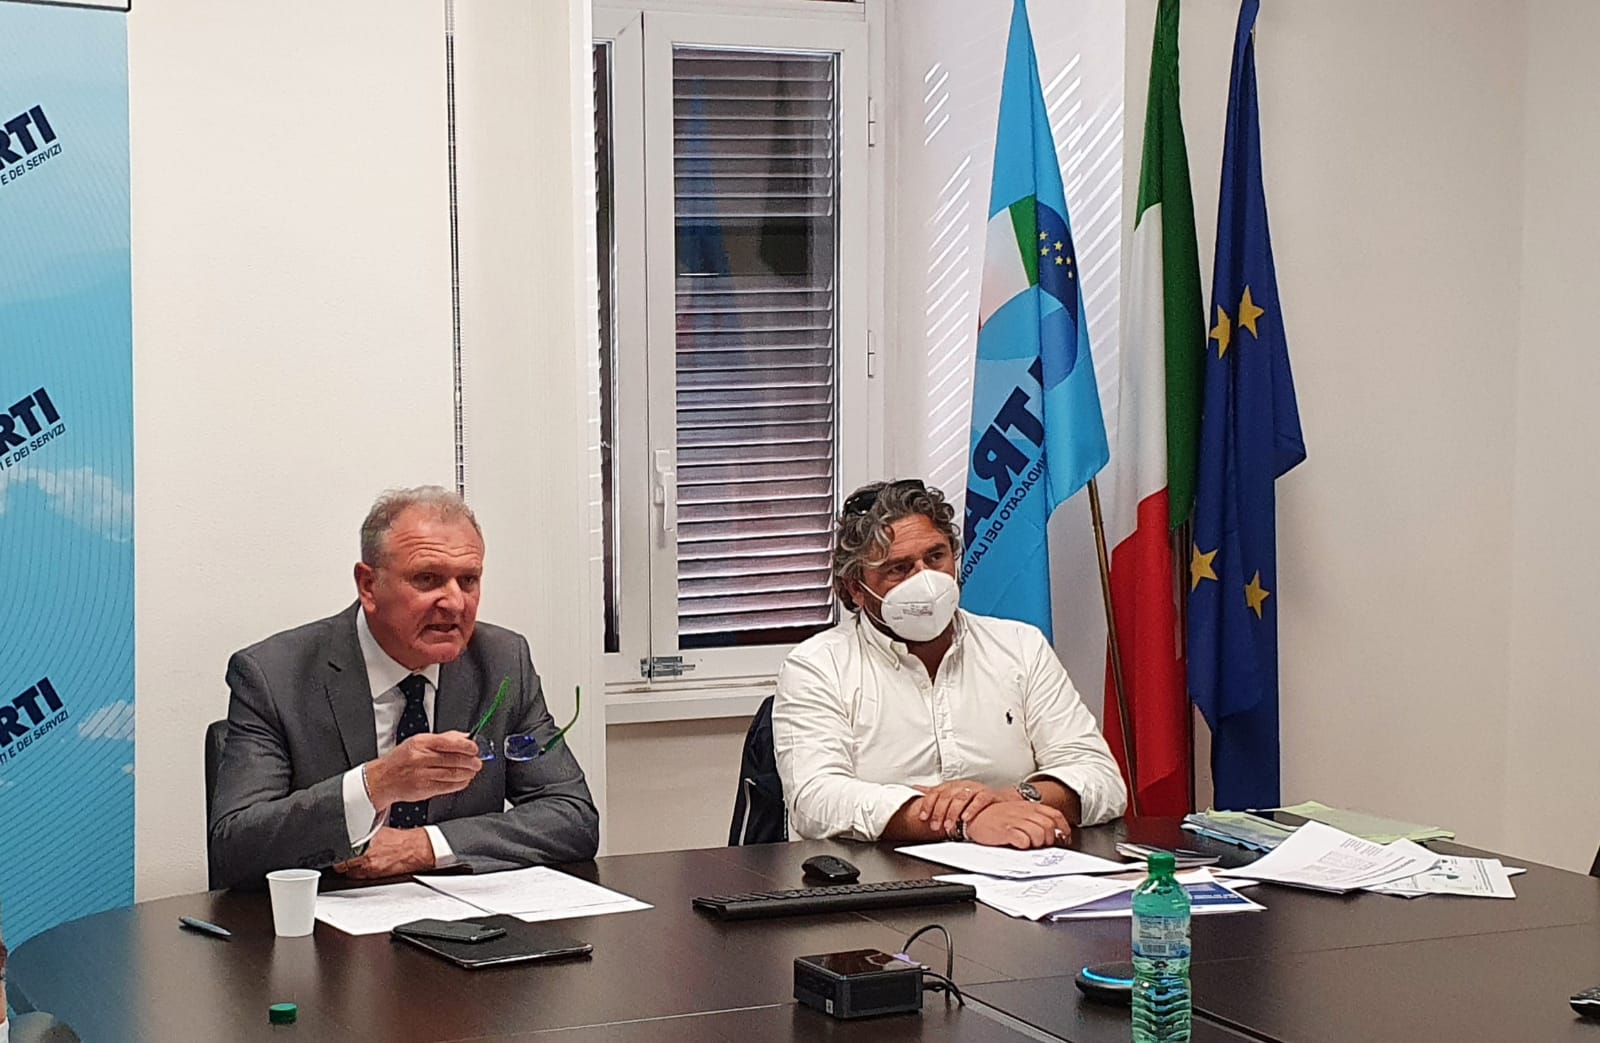 Il Segretario Generale Claudio Tarlazzi e il Segretario Nazionale, Ivan Viglietti, spiegano le richieste avanzate nel corso dell’incontro con i Commissari di Alitalia in A.S. per la procedura inerente la vendita del ramo aviation ad ITA